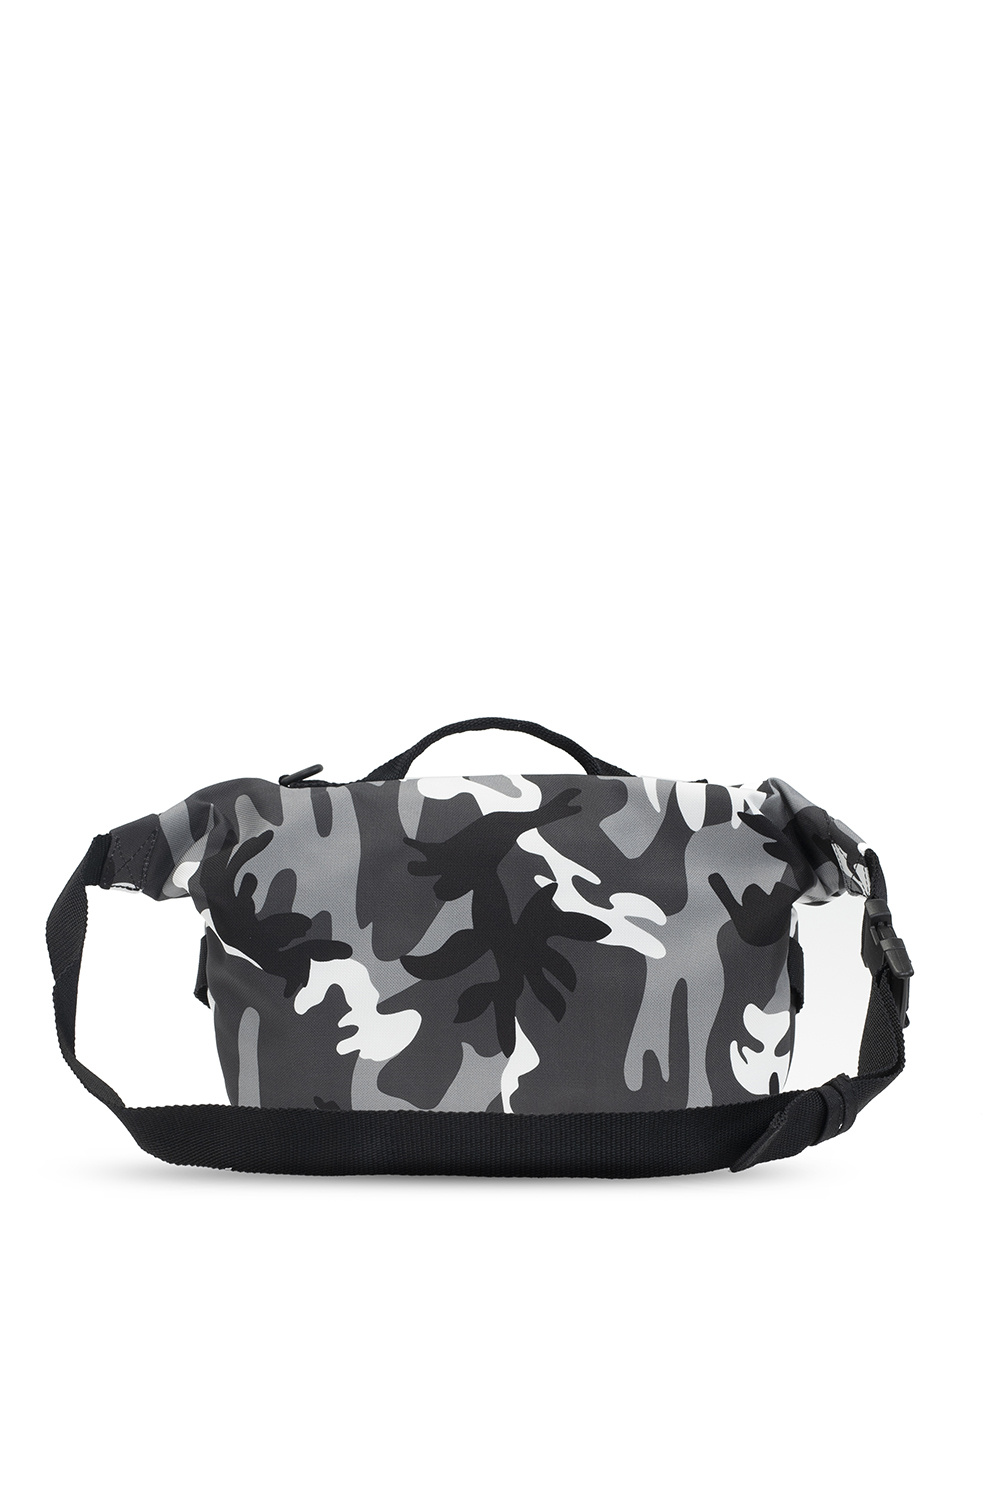 Balenciaga ‘Army’ belt bag